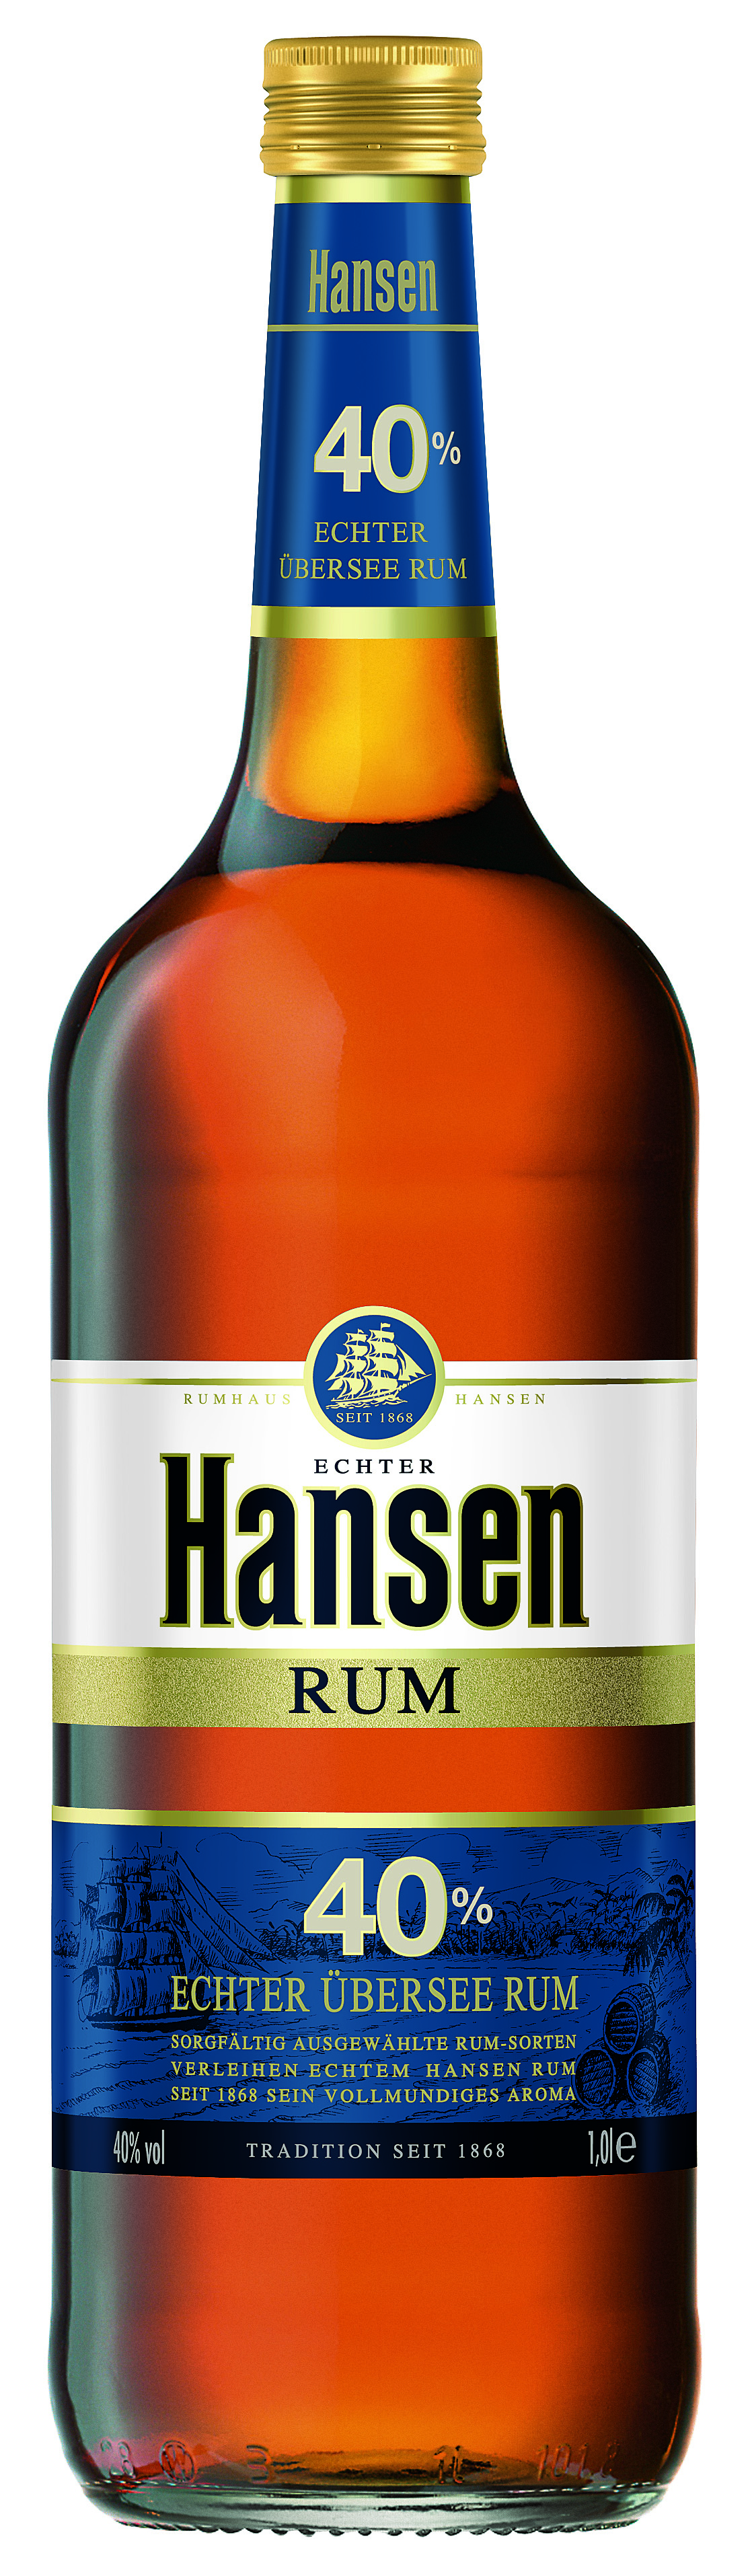 Hansen Rum Blau   